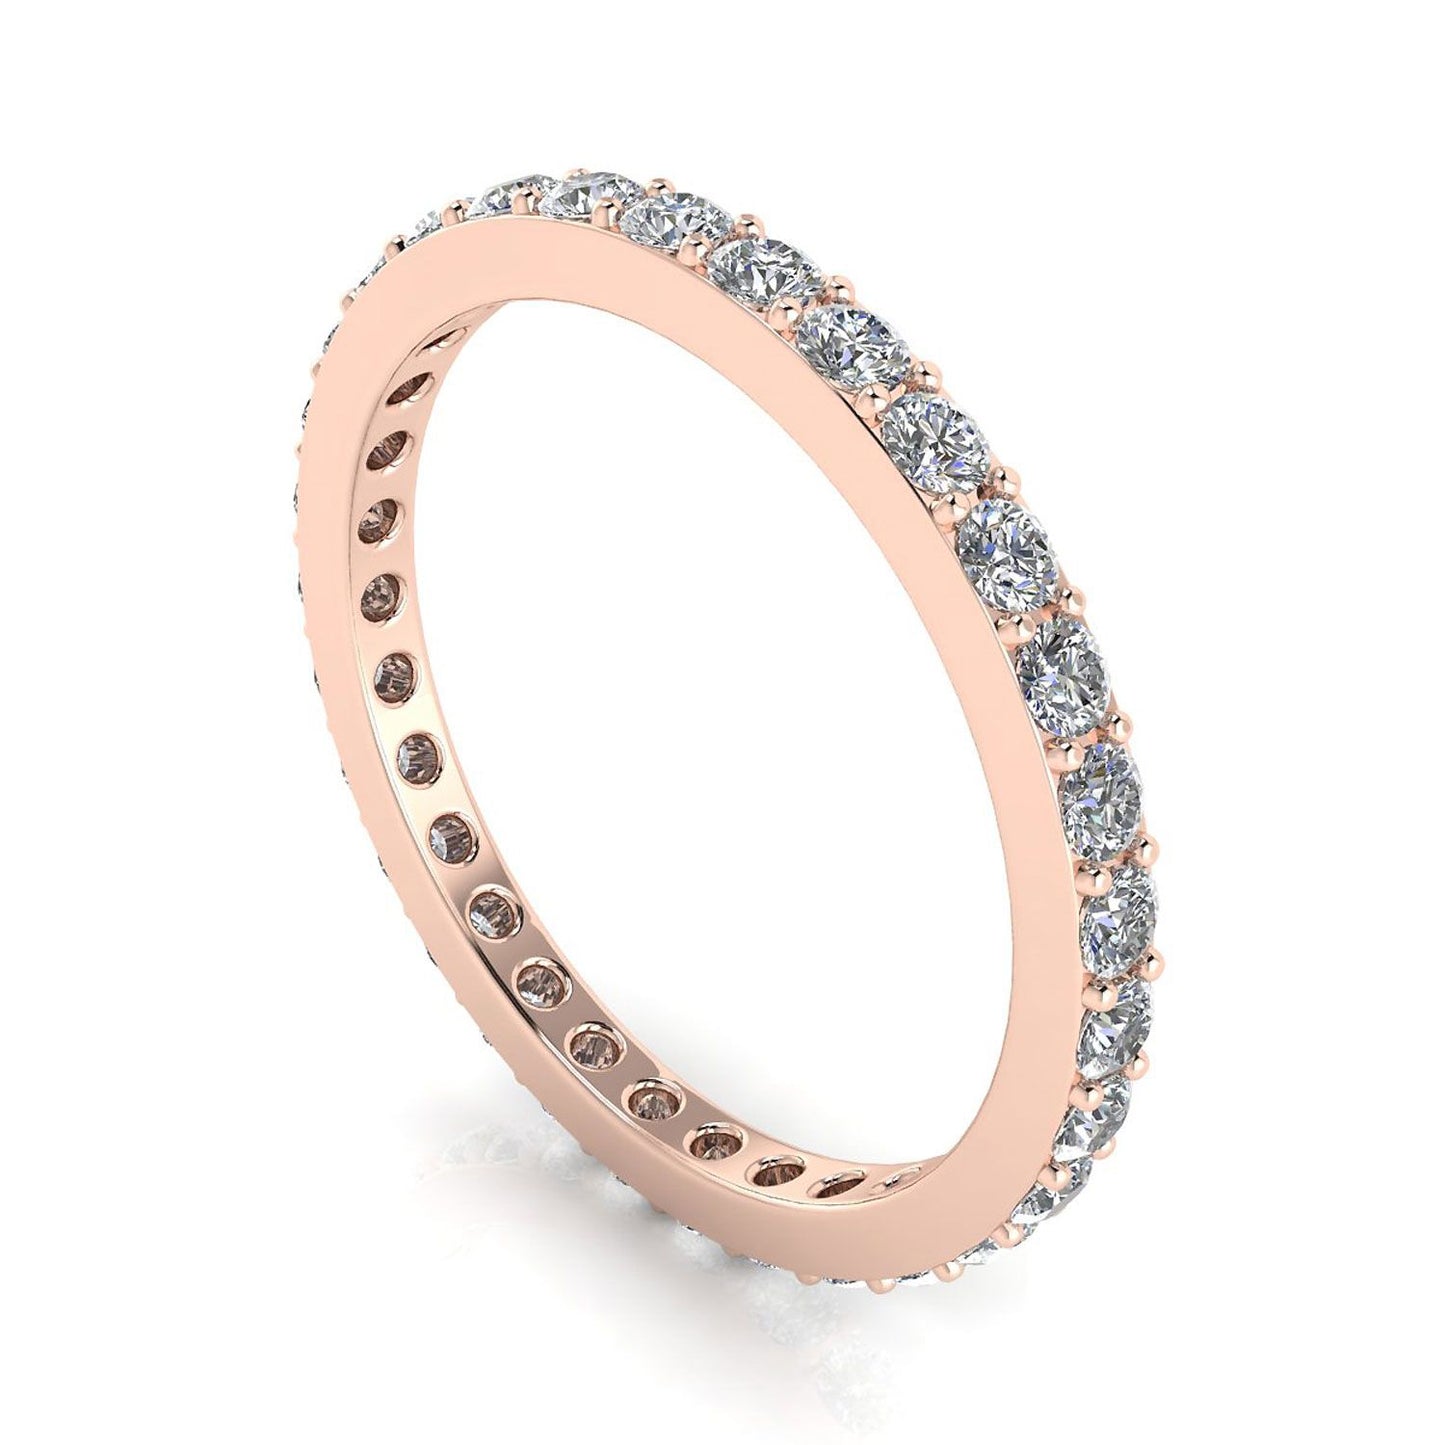 แหวนไพลินเจียระไนเพชรกลมตั้ง Eternity Ring กุหลาบโกลด์ 14k (1.43 กะรัต Tw.) ขนาดแหวน 5.5